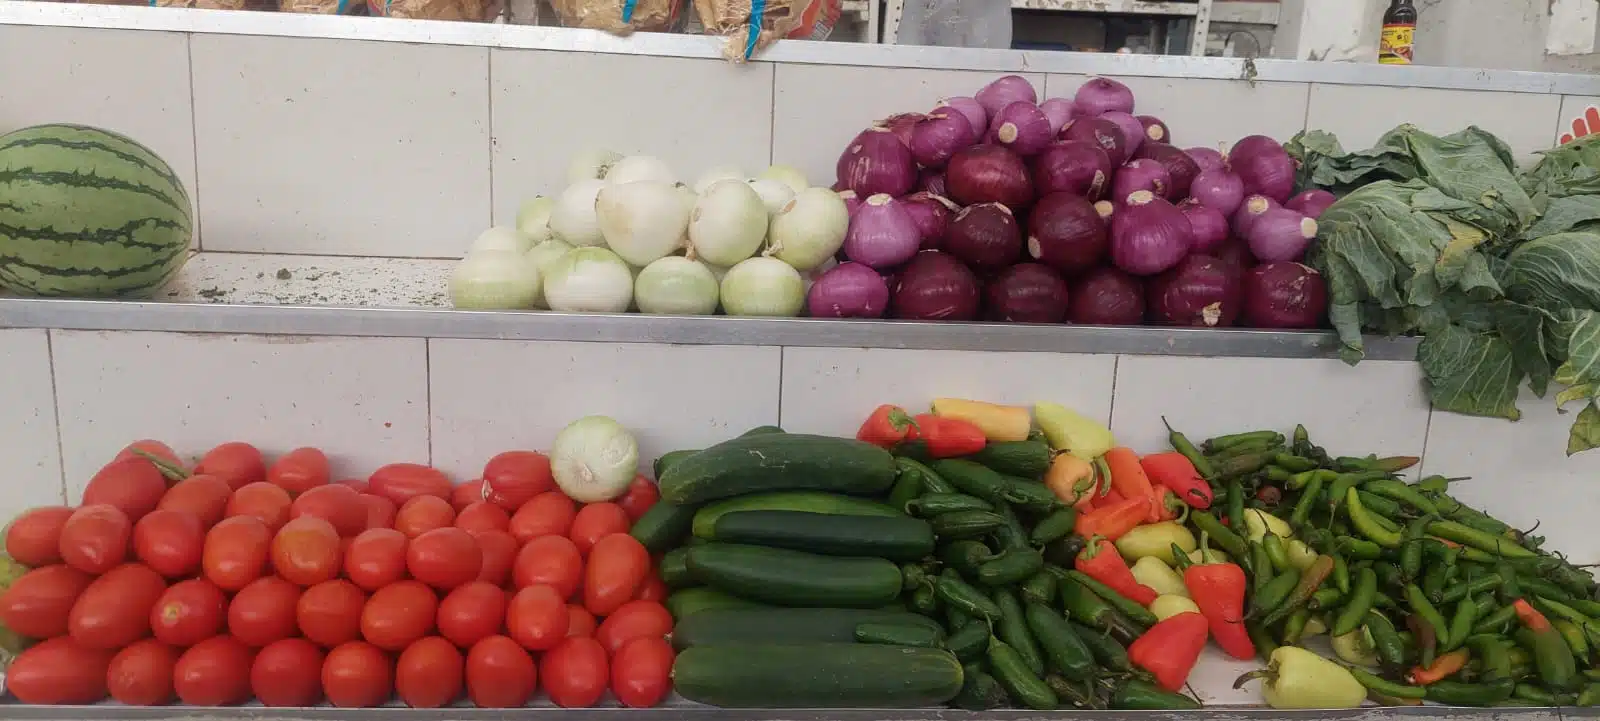 Sandia, cebolla blanca y morada, lechuga, tomate, pepino y chiles de colores: verde, amarillo y rojo